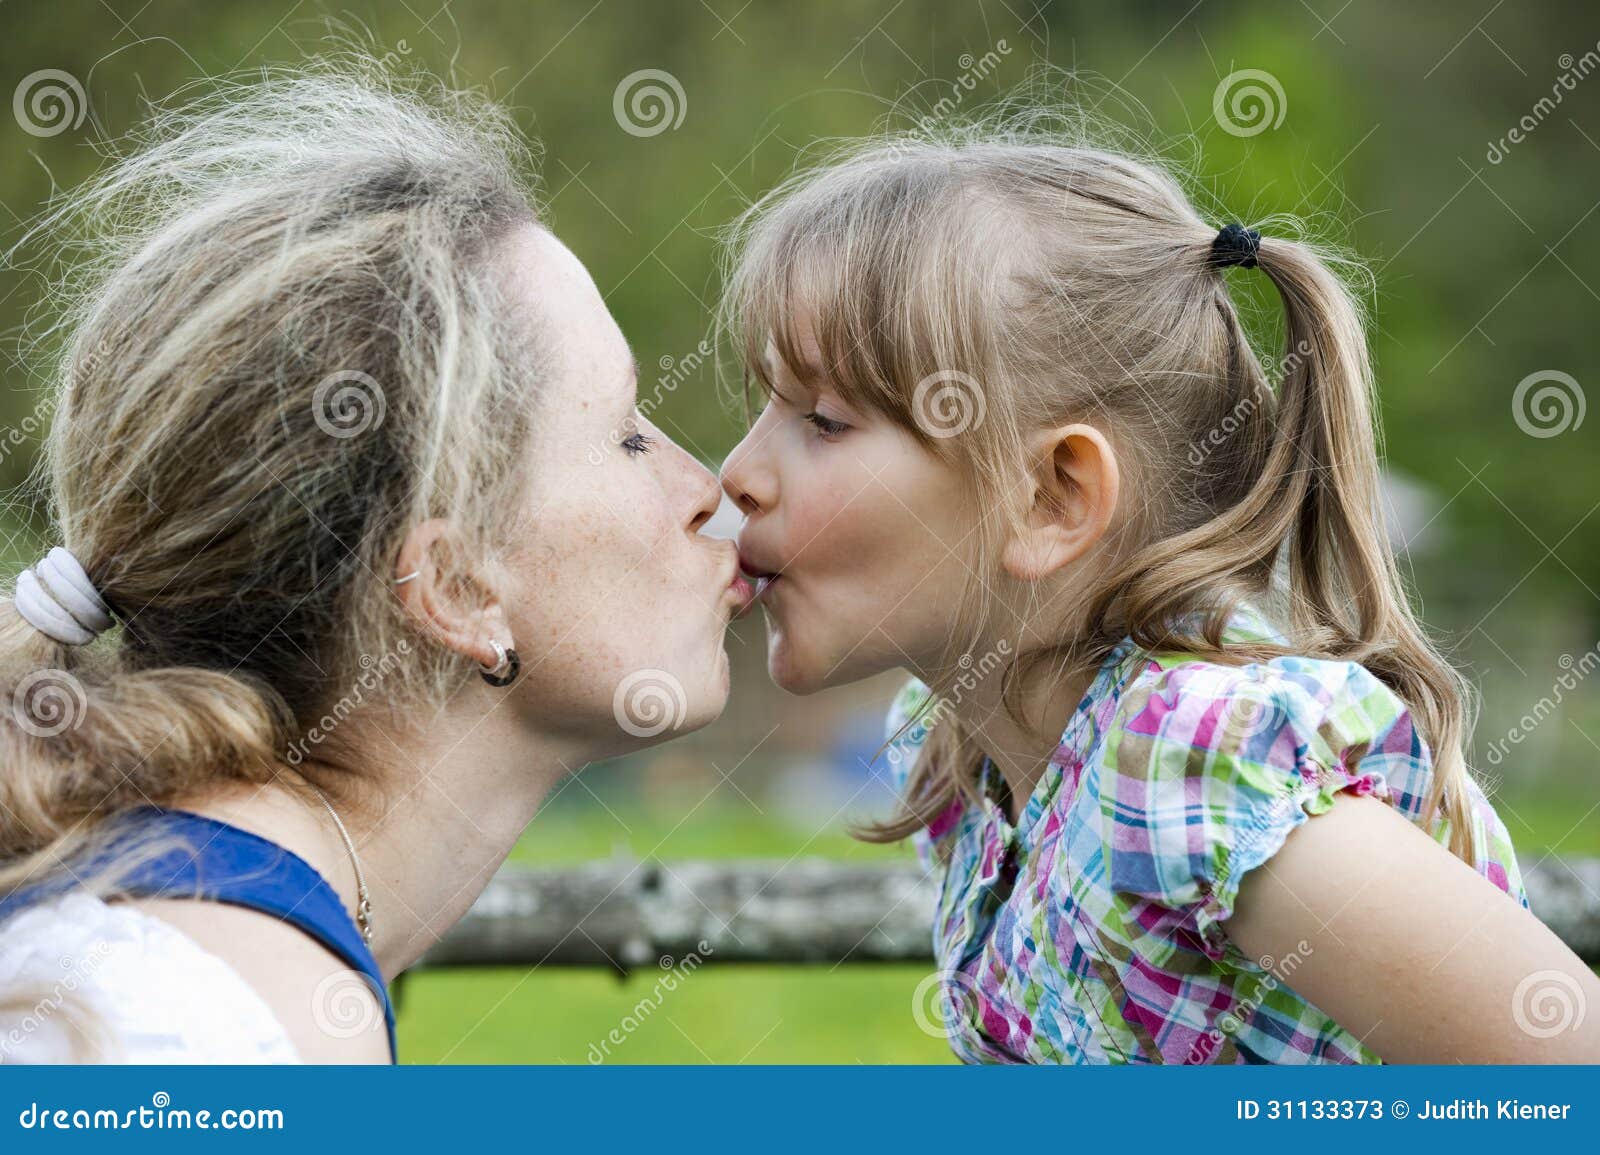 Бабка лижет внучке. Мать целует дочь. Мать и дочь поцелуй. Мама с дочкой поцелуи с языком.